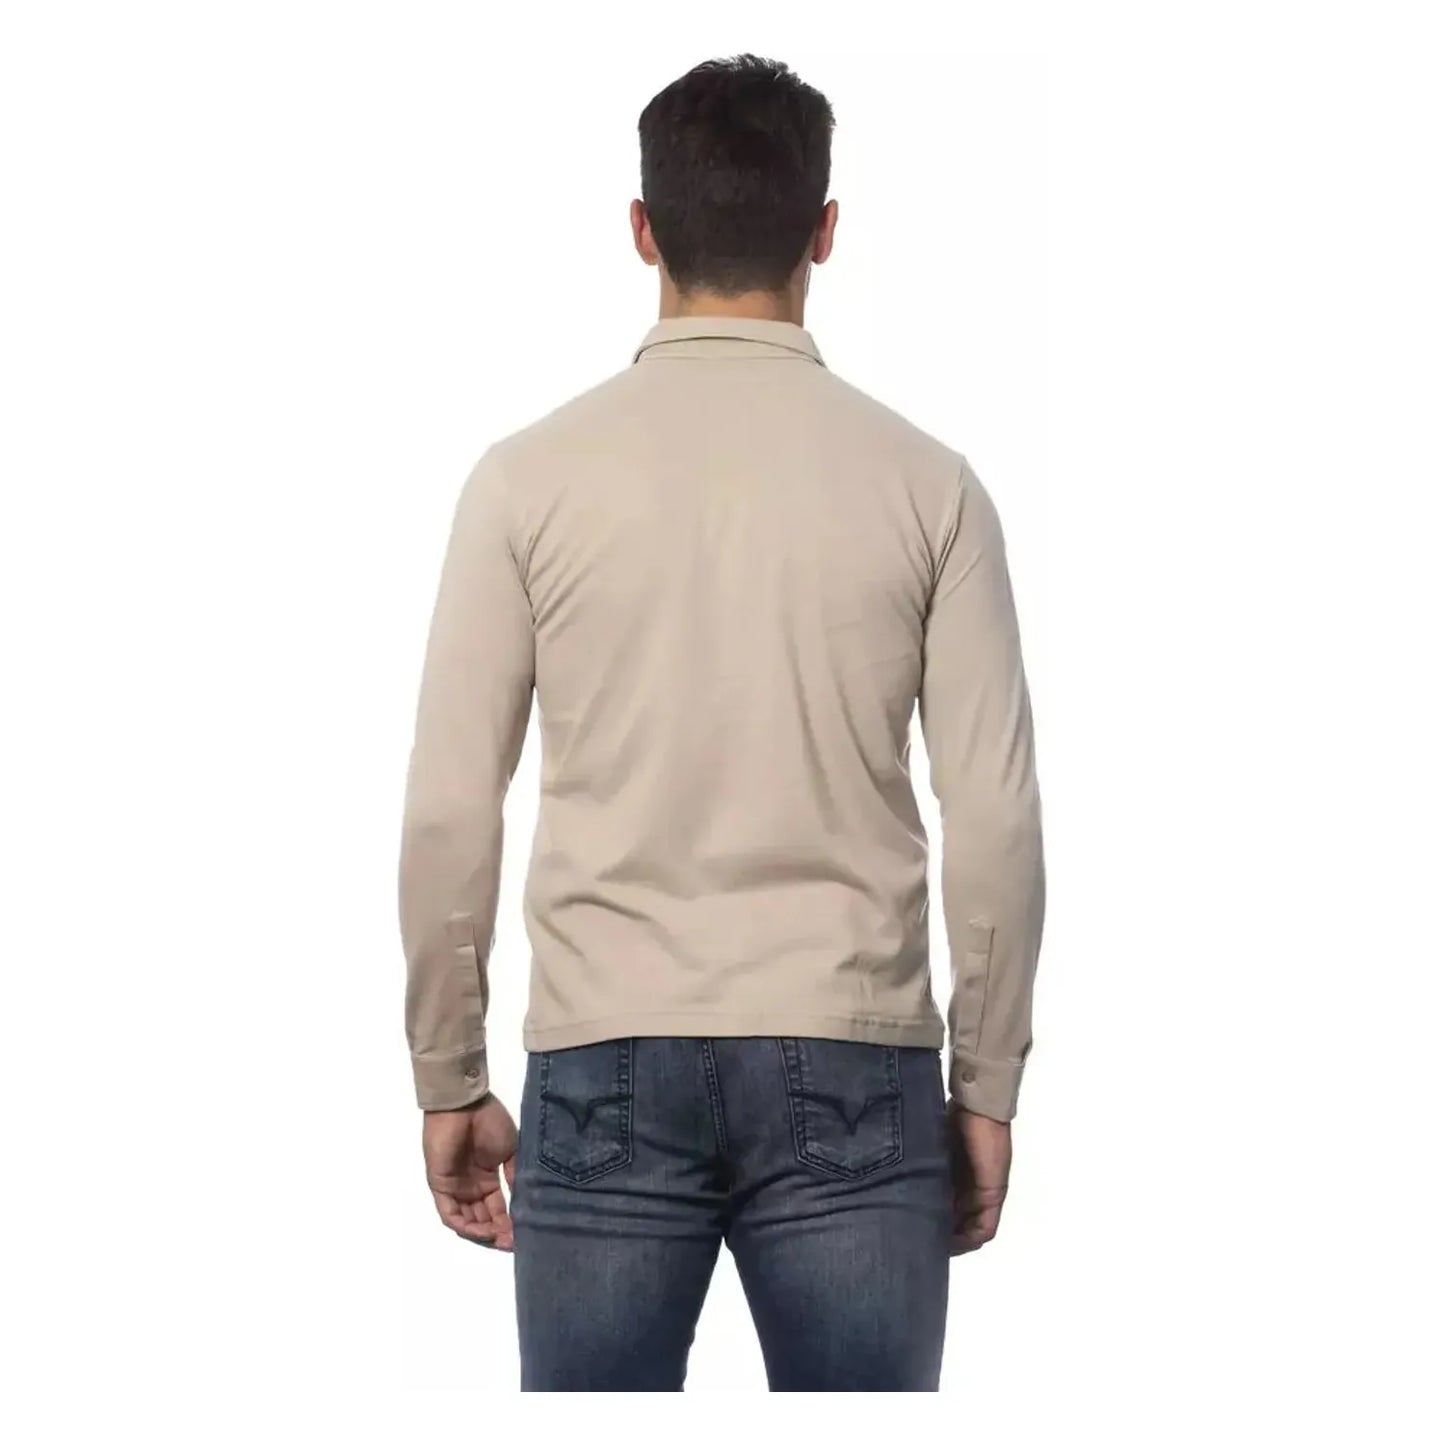 Verri Elegant Beige Regular Fit Cotton Shirt v-shirt stock_product_image_18291_1600080133-16-6a9b180a-fcb.webp